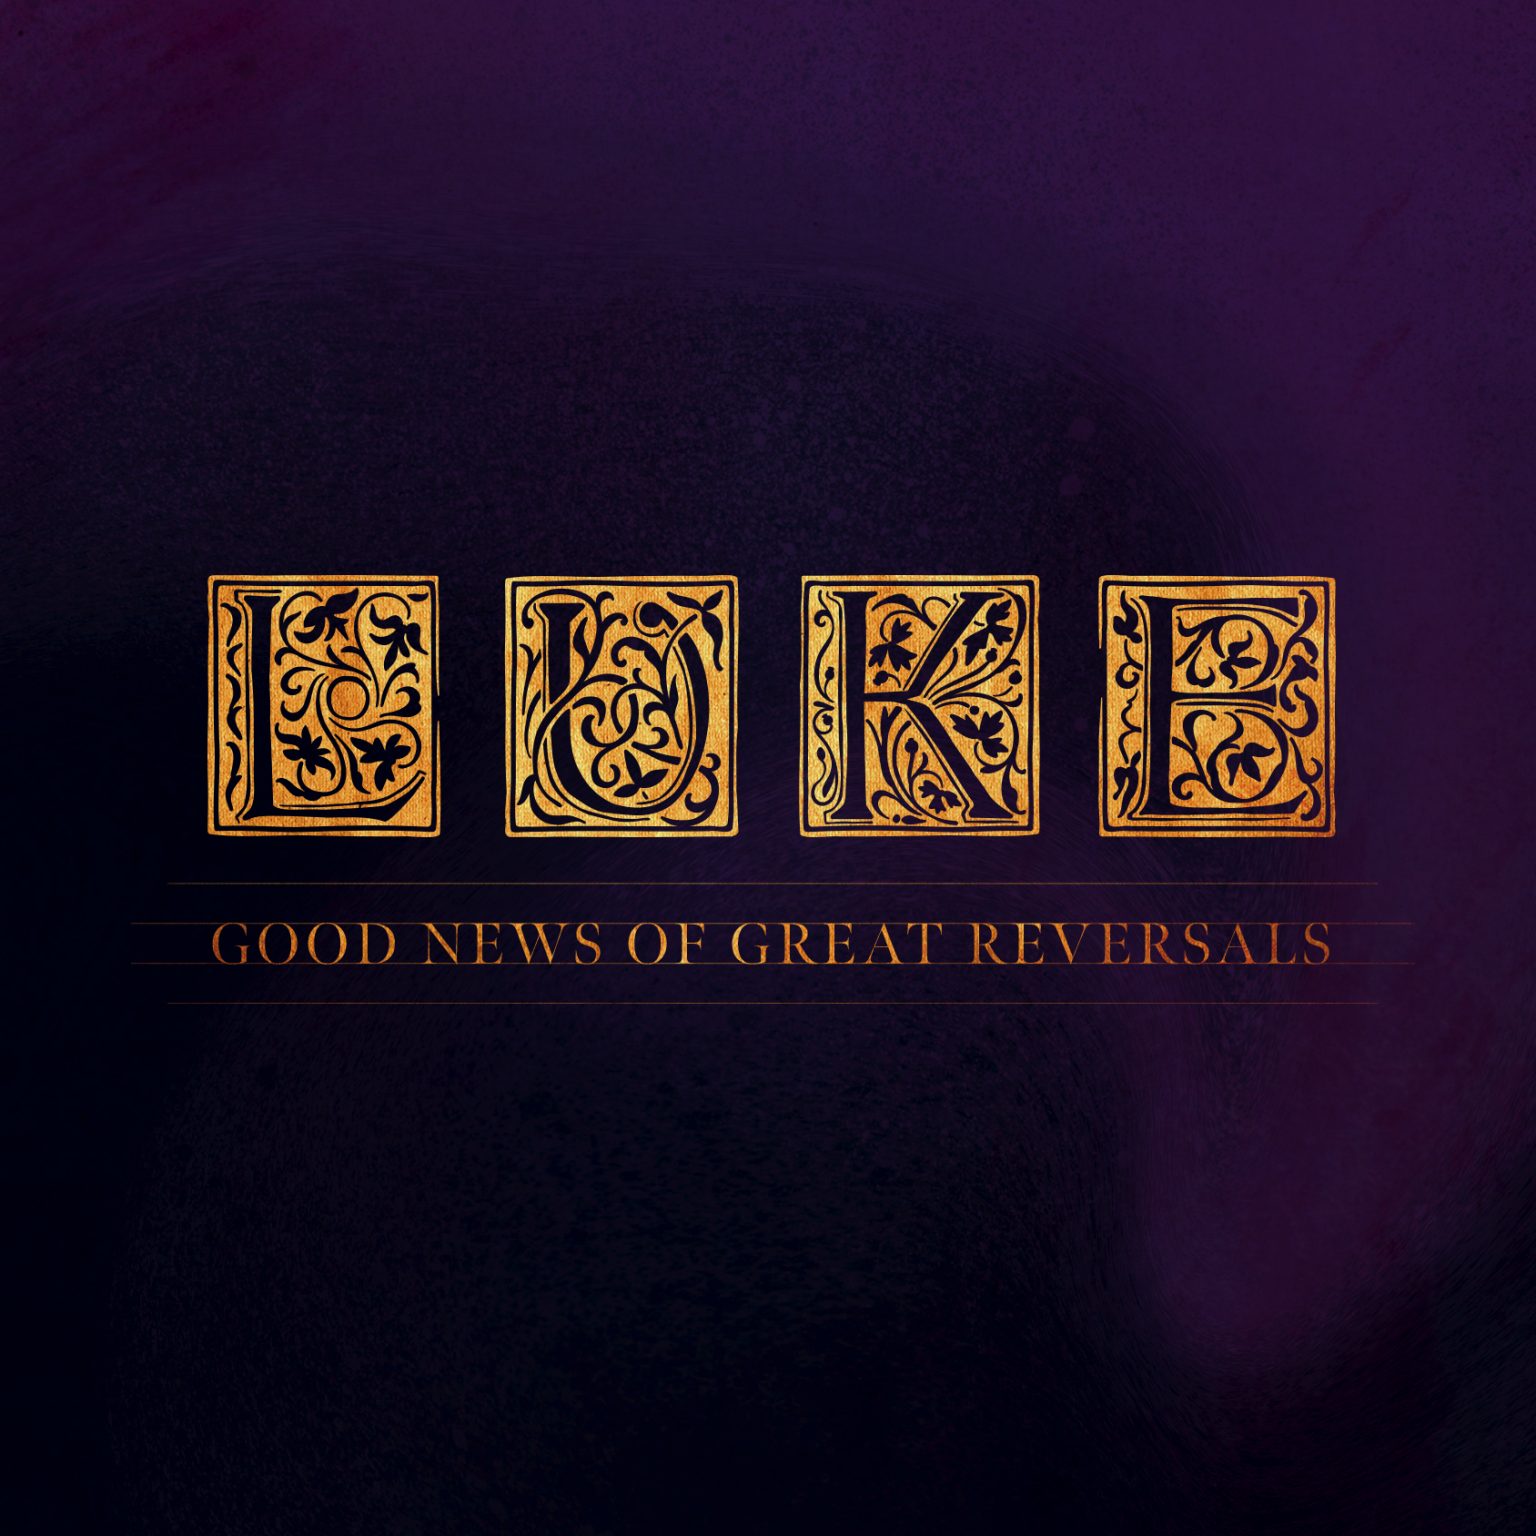 Luke: Good News of Great Reversals